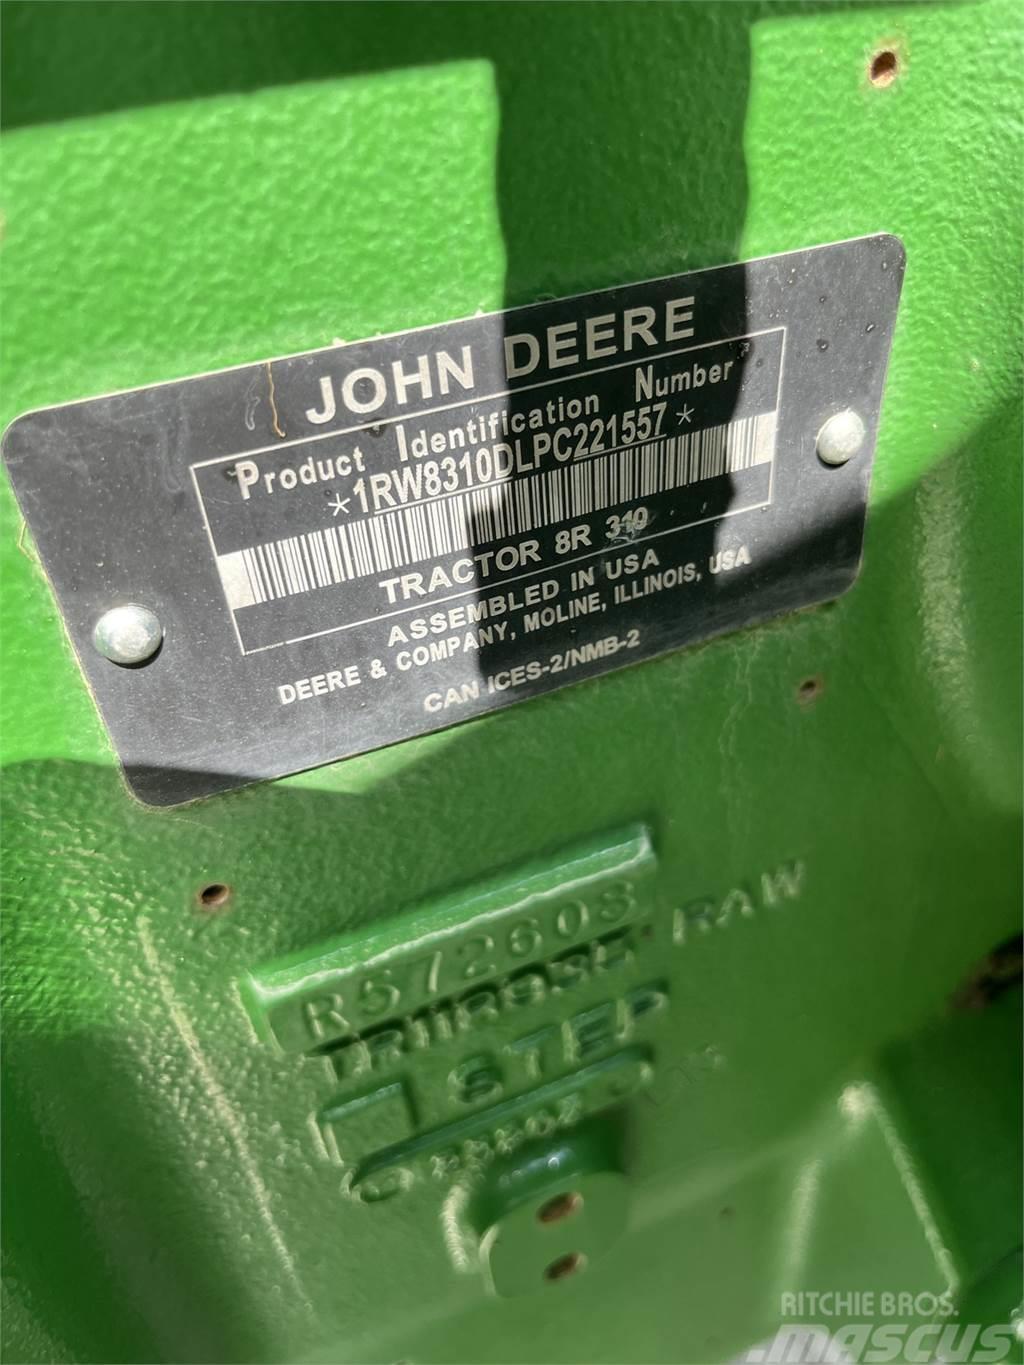 John Deere 8R 310 Tractoare